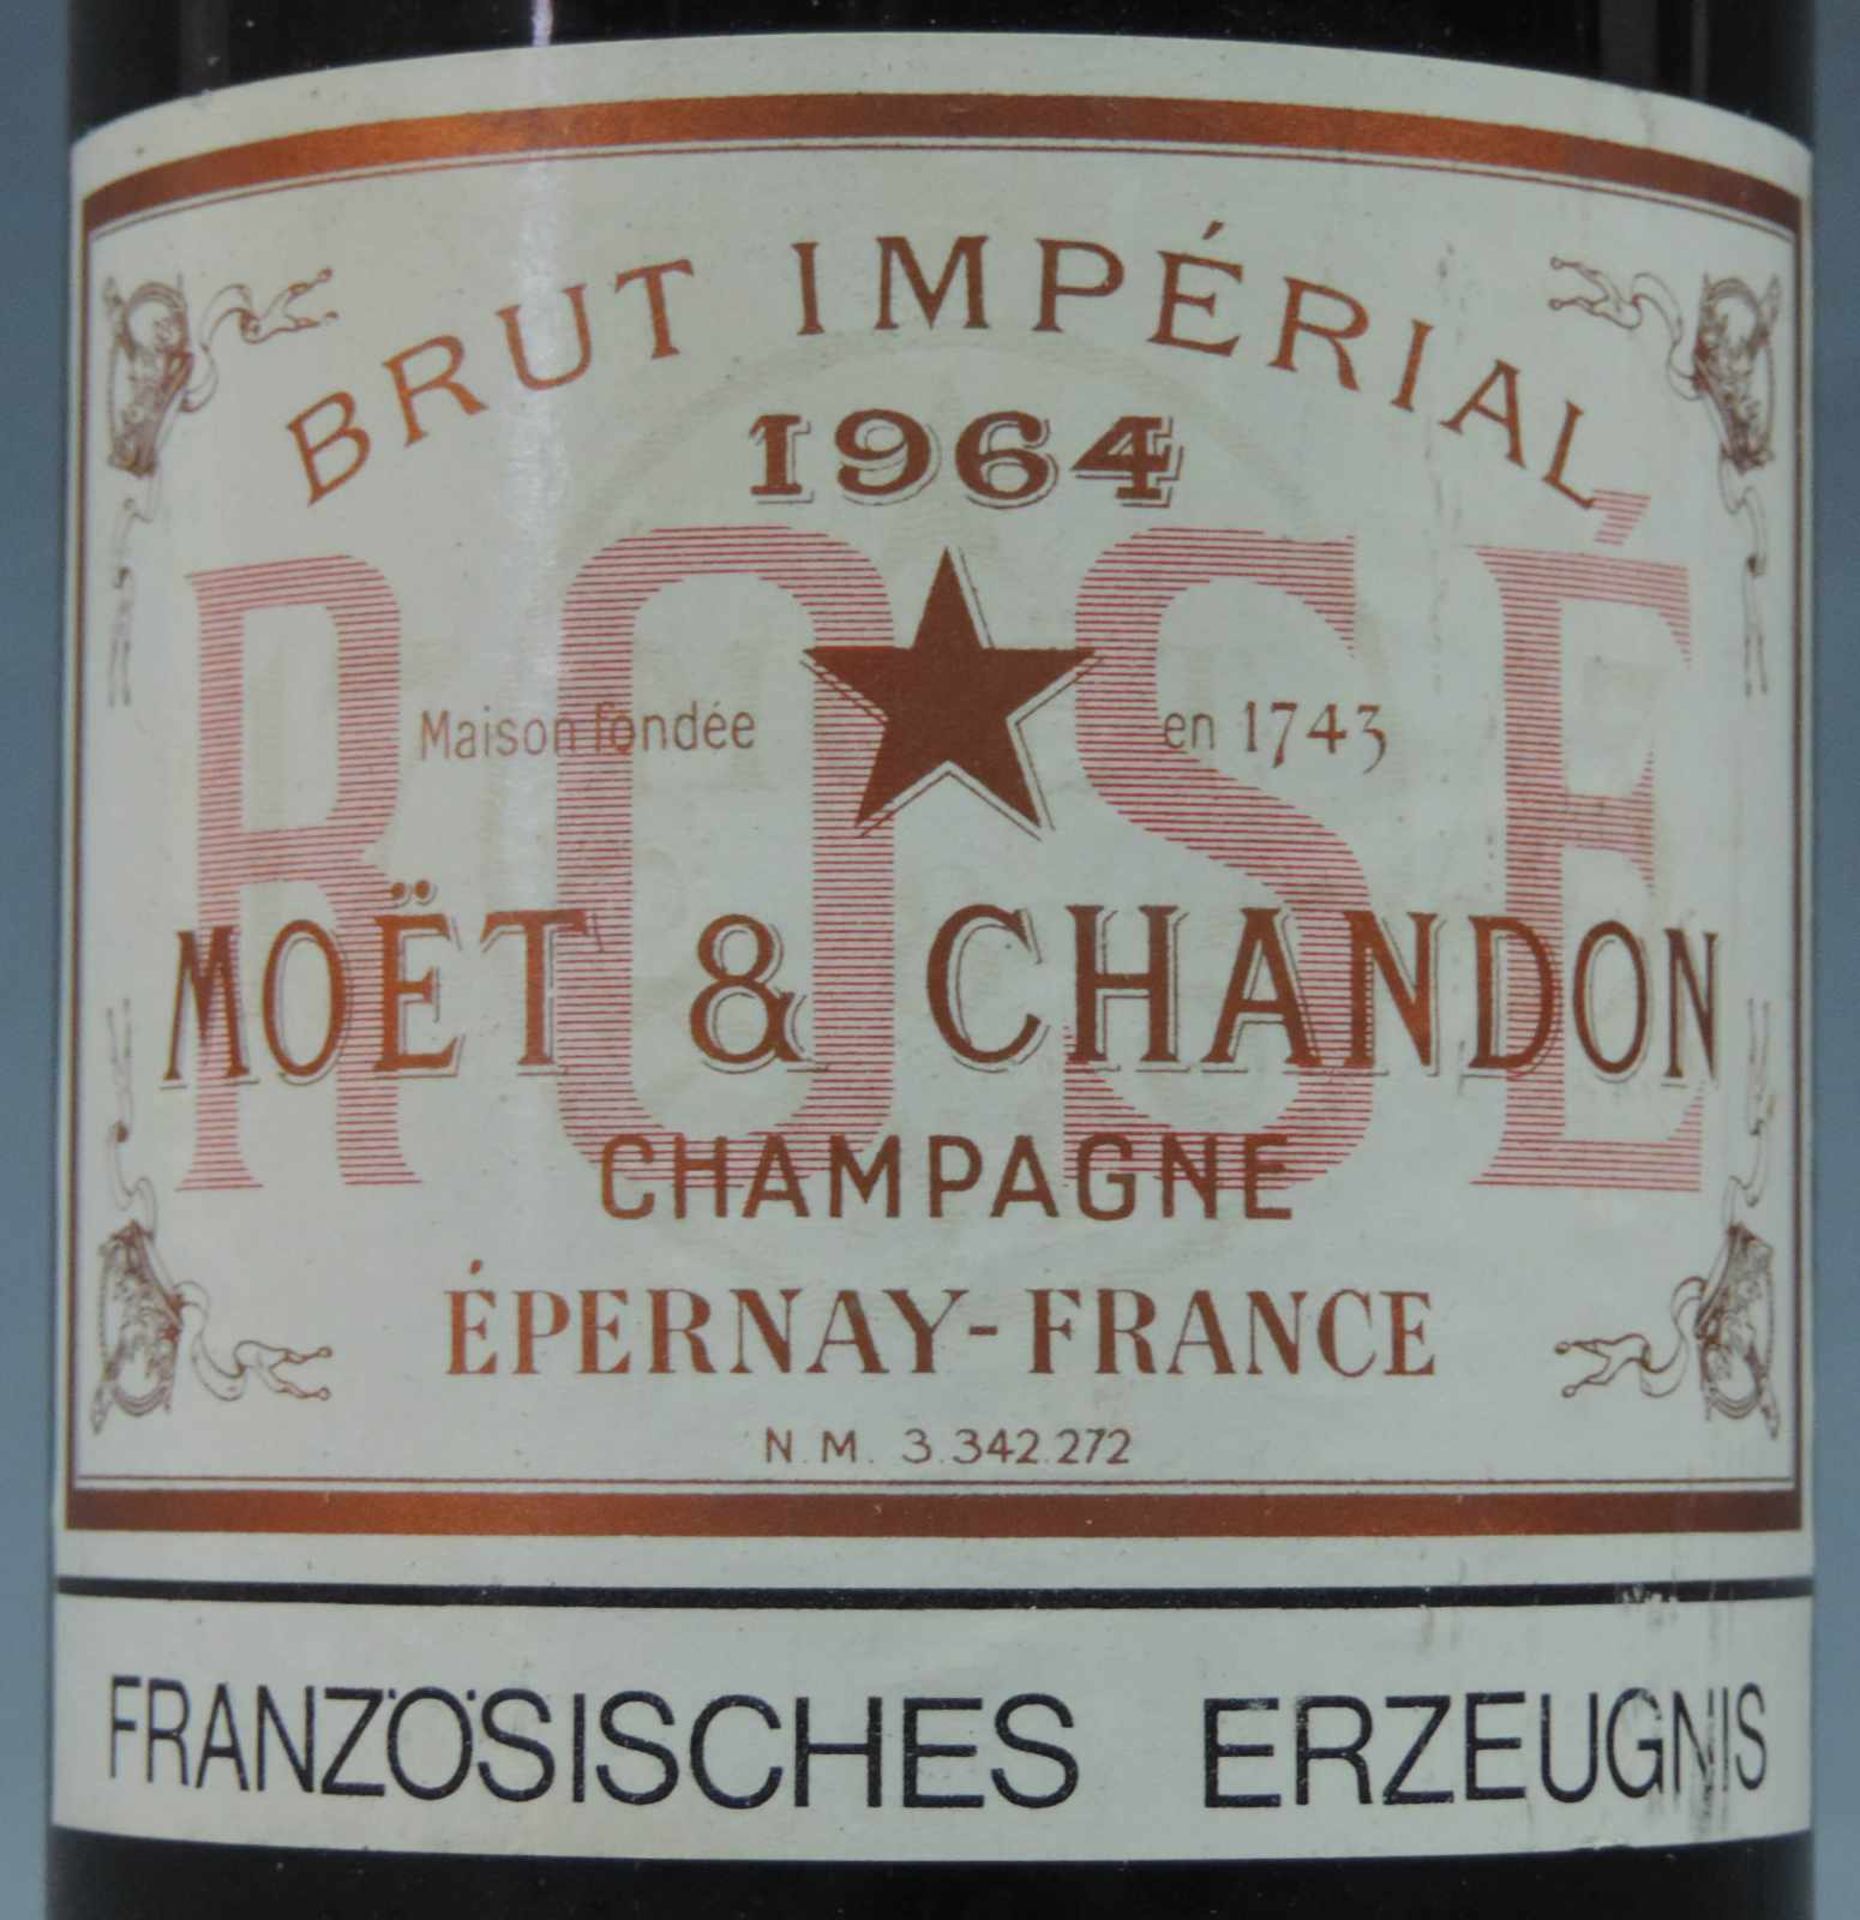 1964 Moet & Chandon Champagne Brut Imperial. Eine ganze Flasche Campangner Frankreich weiß. - Bild 2 aus 6